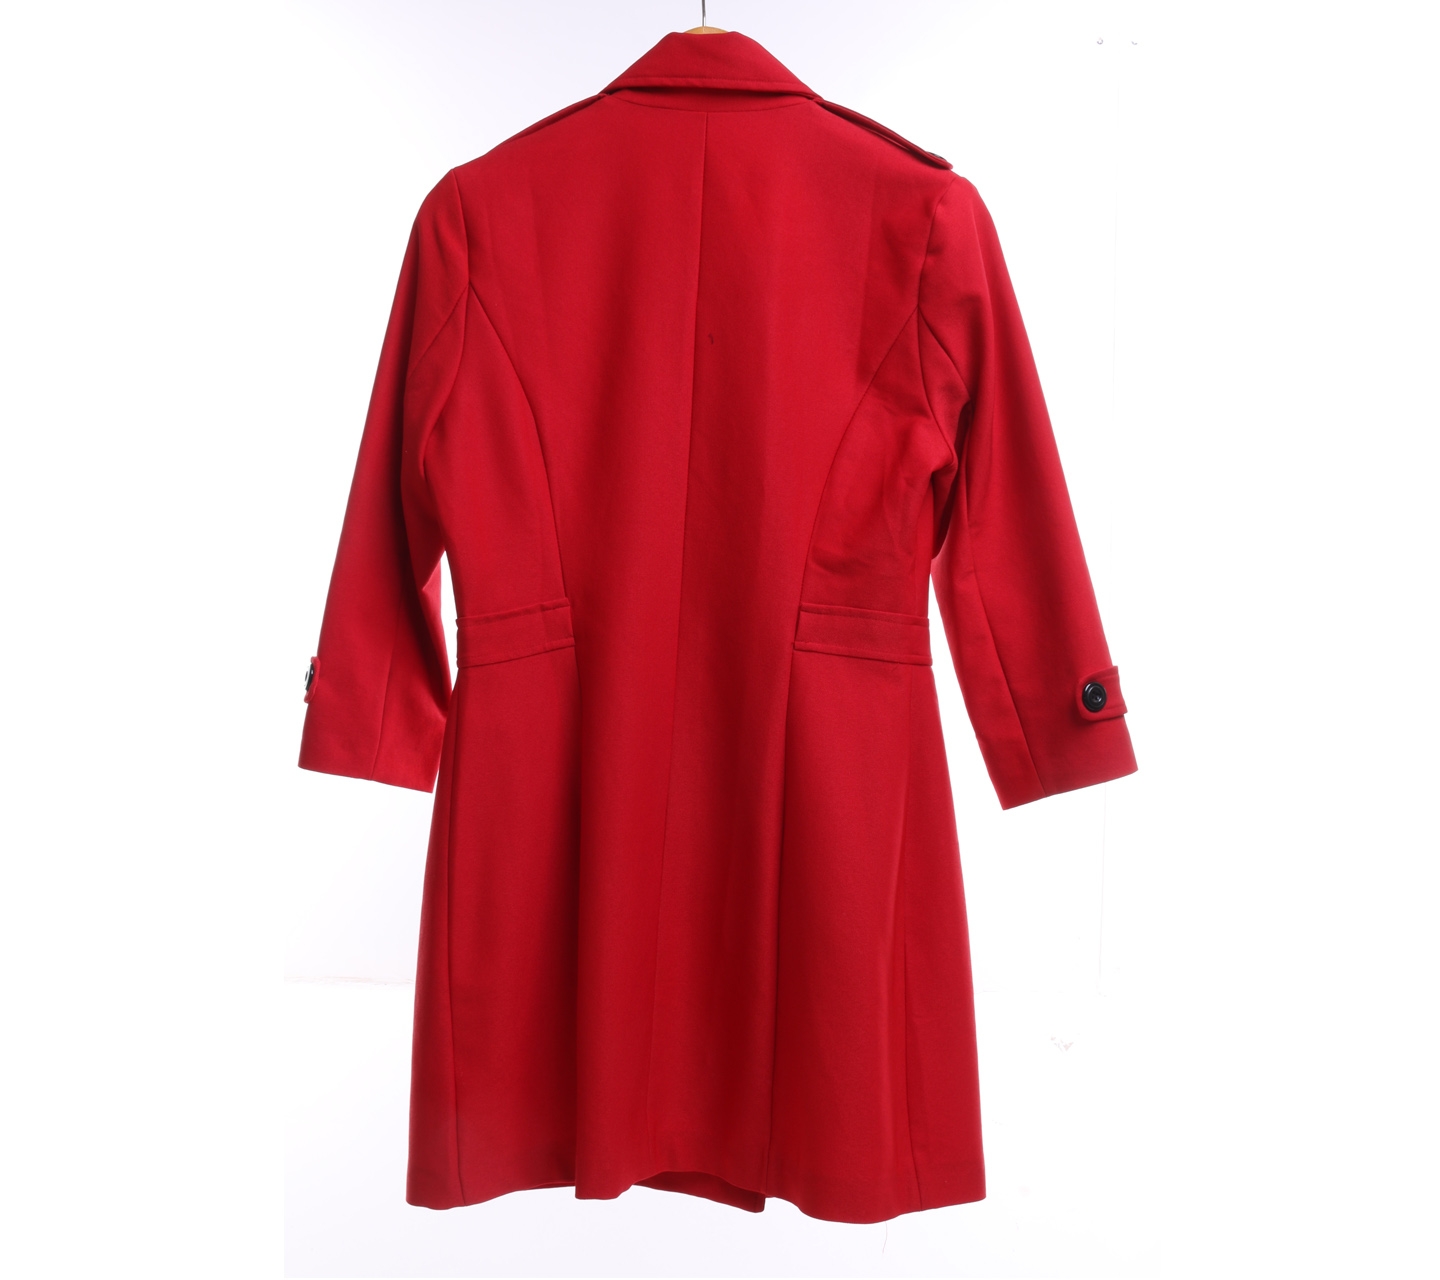 Solemio Red Pea Coat